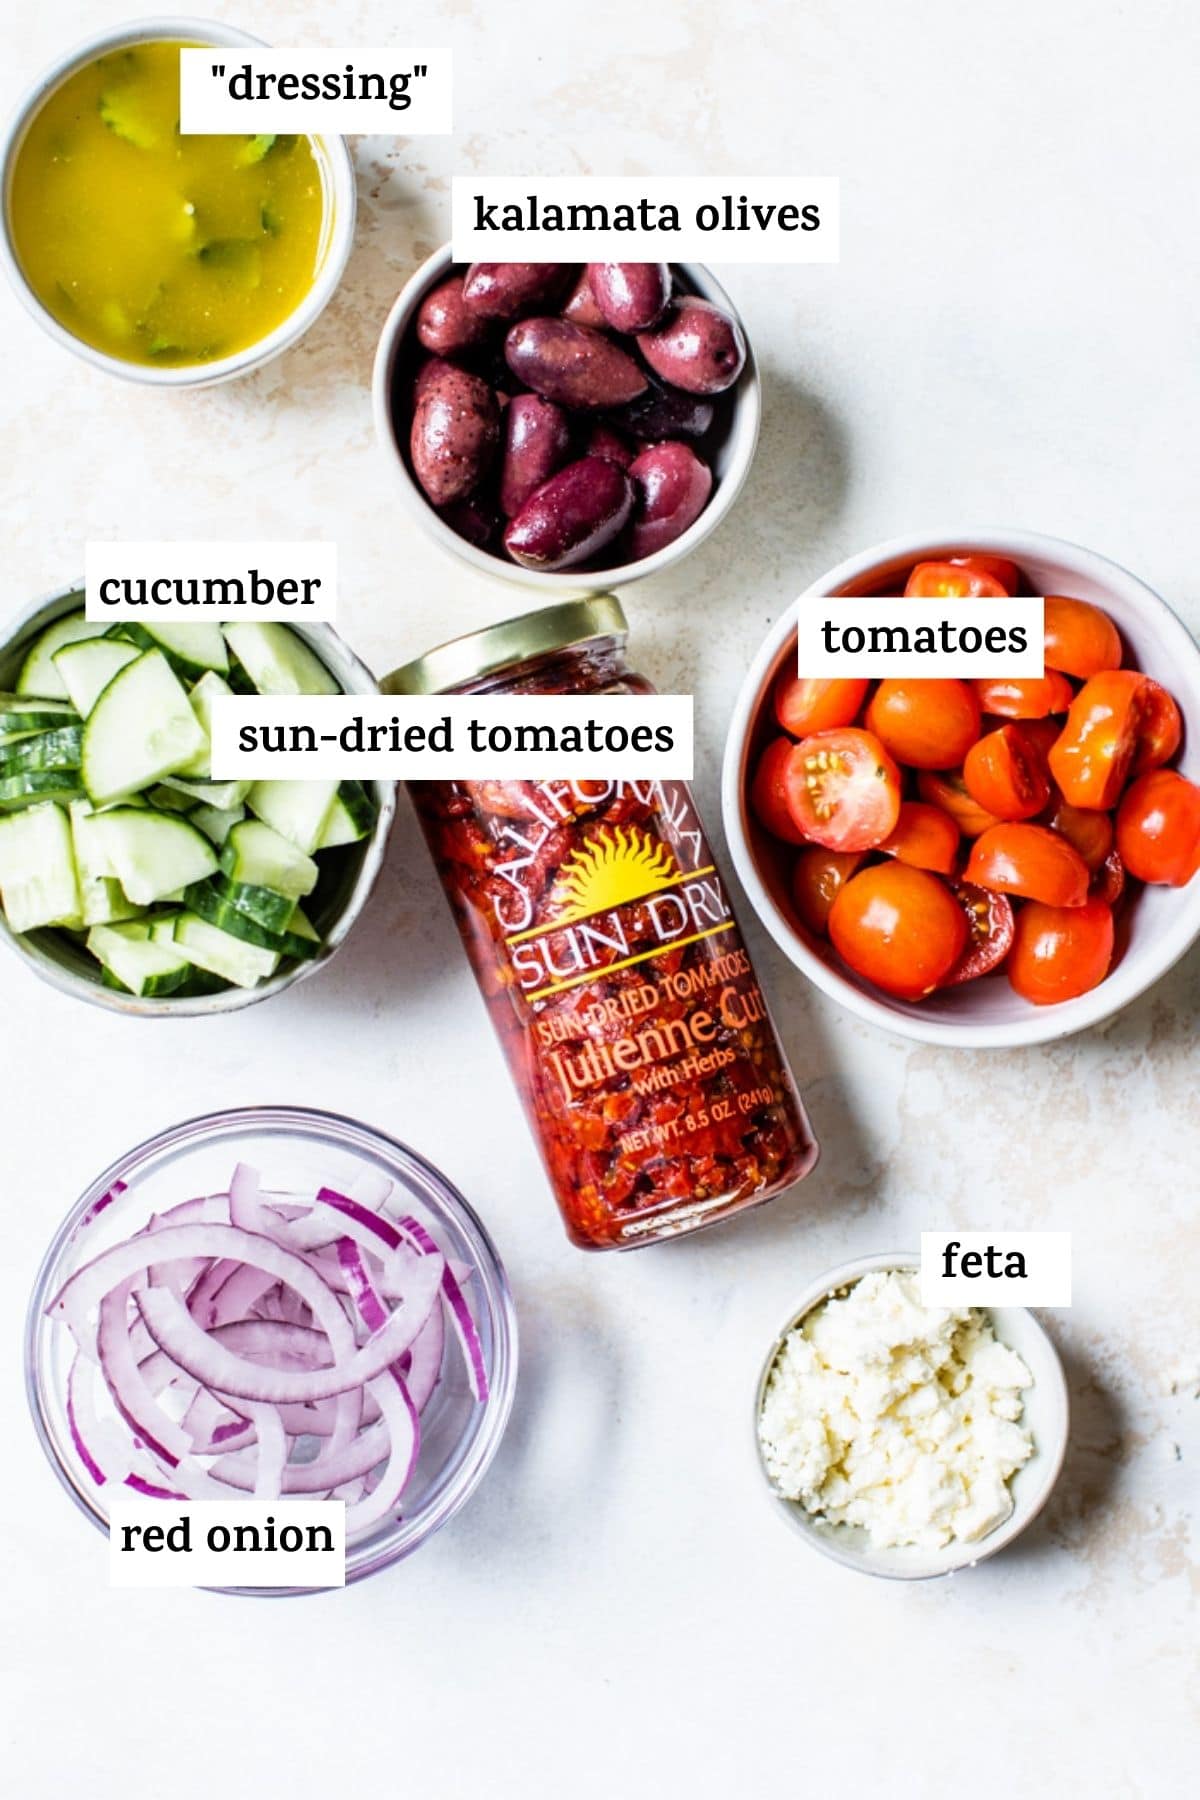 ingredientes para hacer ensalada de pasta como tomates secos y cebolla roja